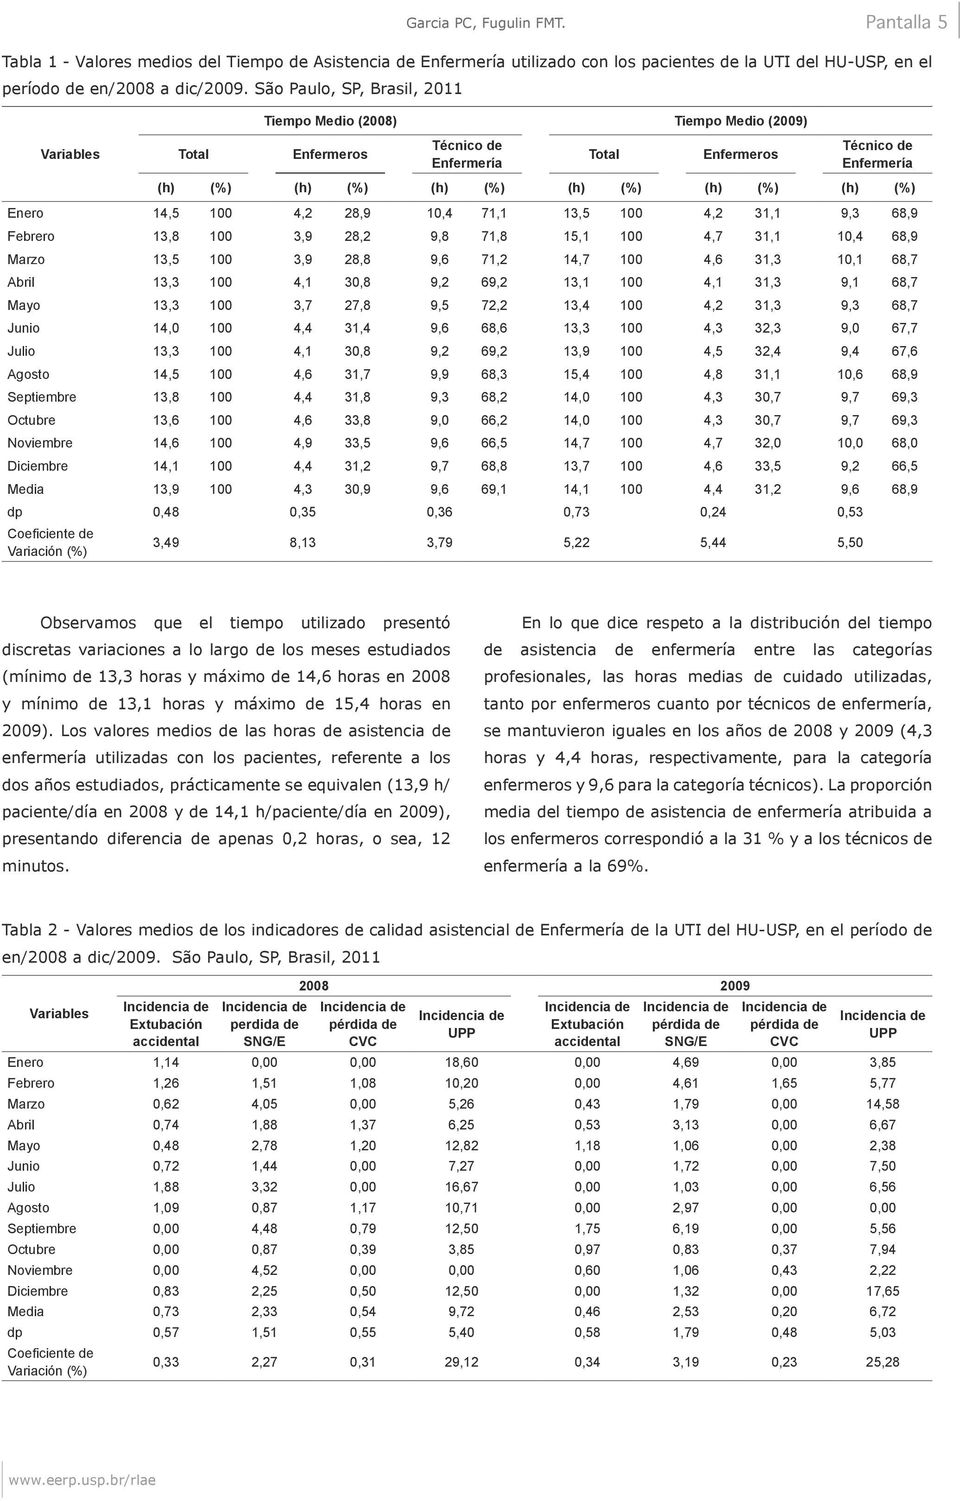 São Paulo, SP, Brasil, 2011 Tiempo Medio (2008) Tiempo Medio (2009) Enfermeros Técnico de Enfermería Total Enfermeros Técnico de Enfermería (h) (%) (h) (%) (h) (%) (h) (%) (h) (%) (h) (%) Enero 14,5